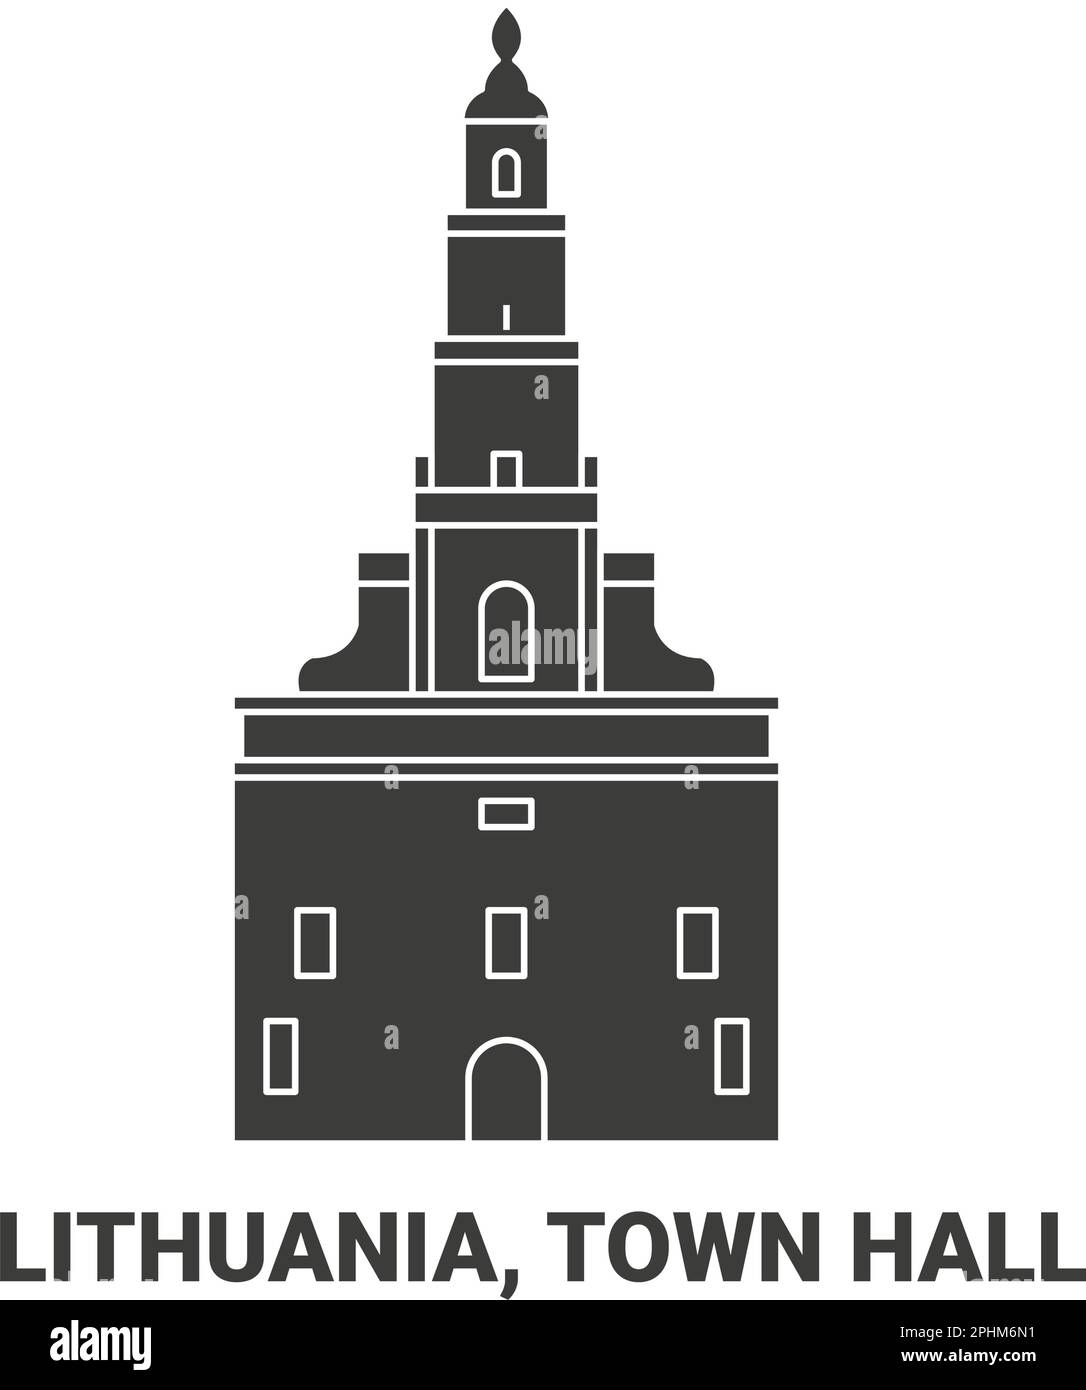 Lituanie, hôtel de ville, illustration vectorielle de voyage Illustration de Vecteur